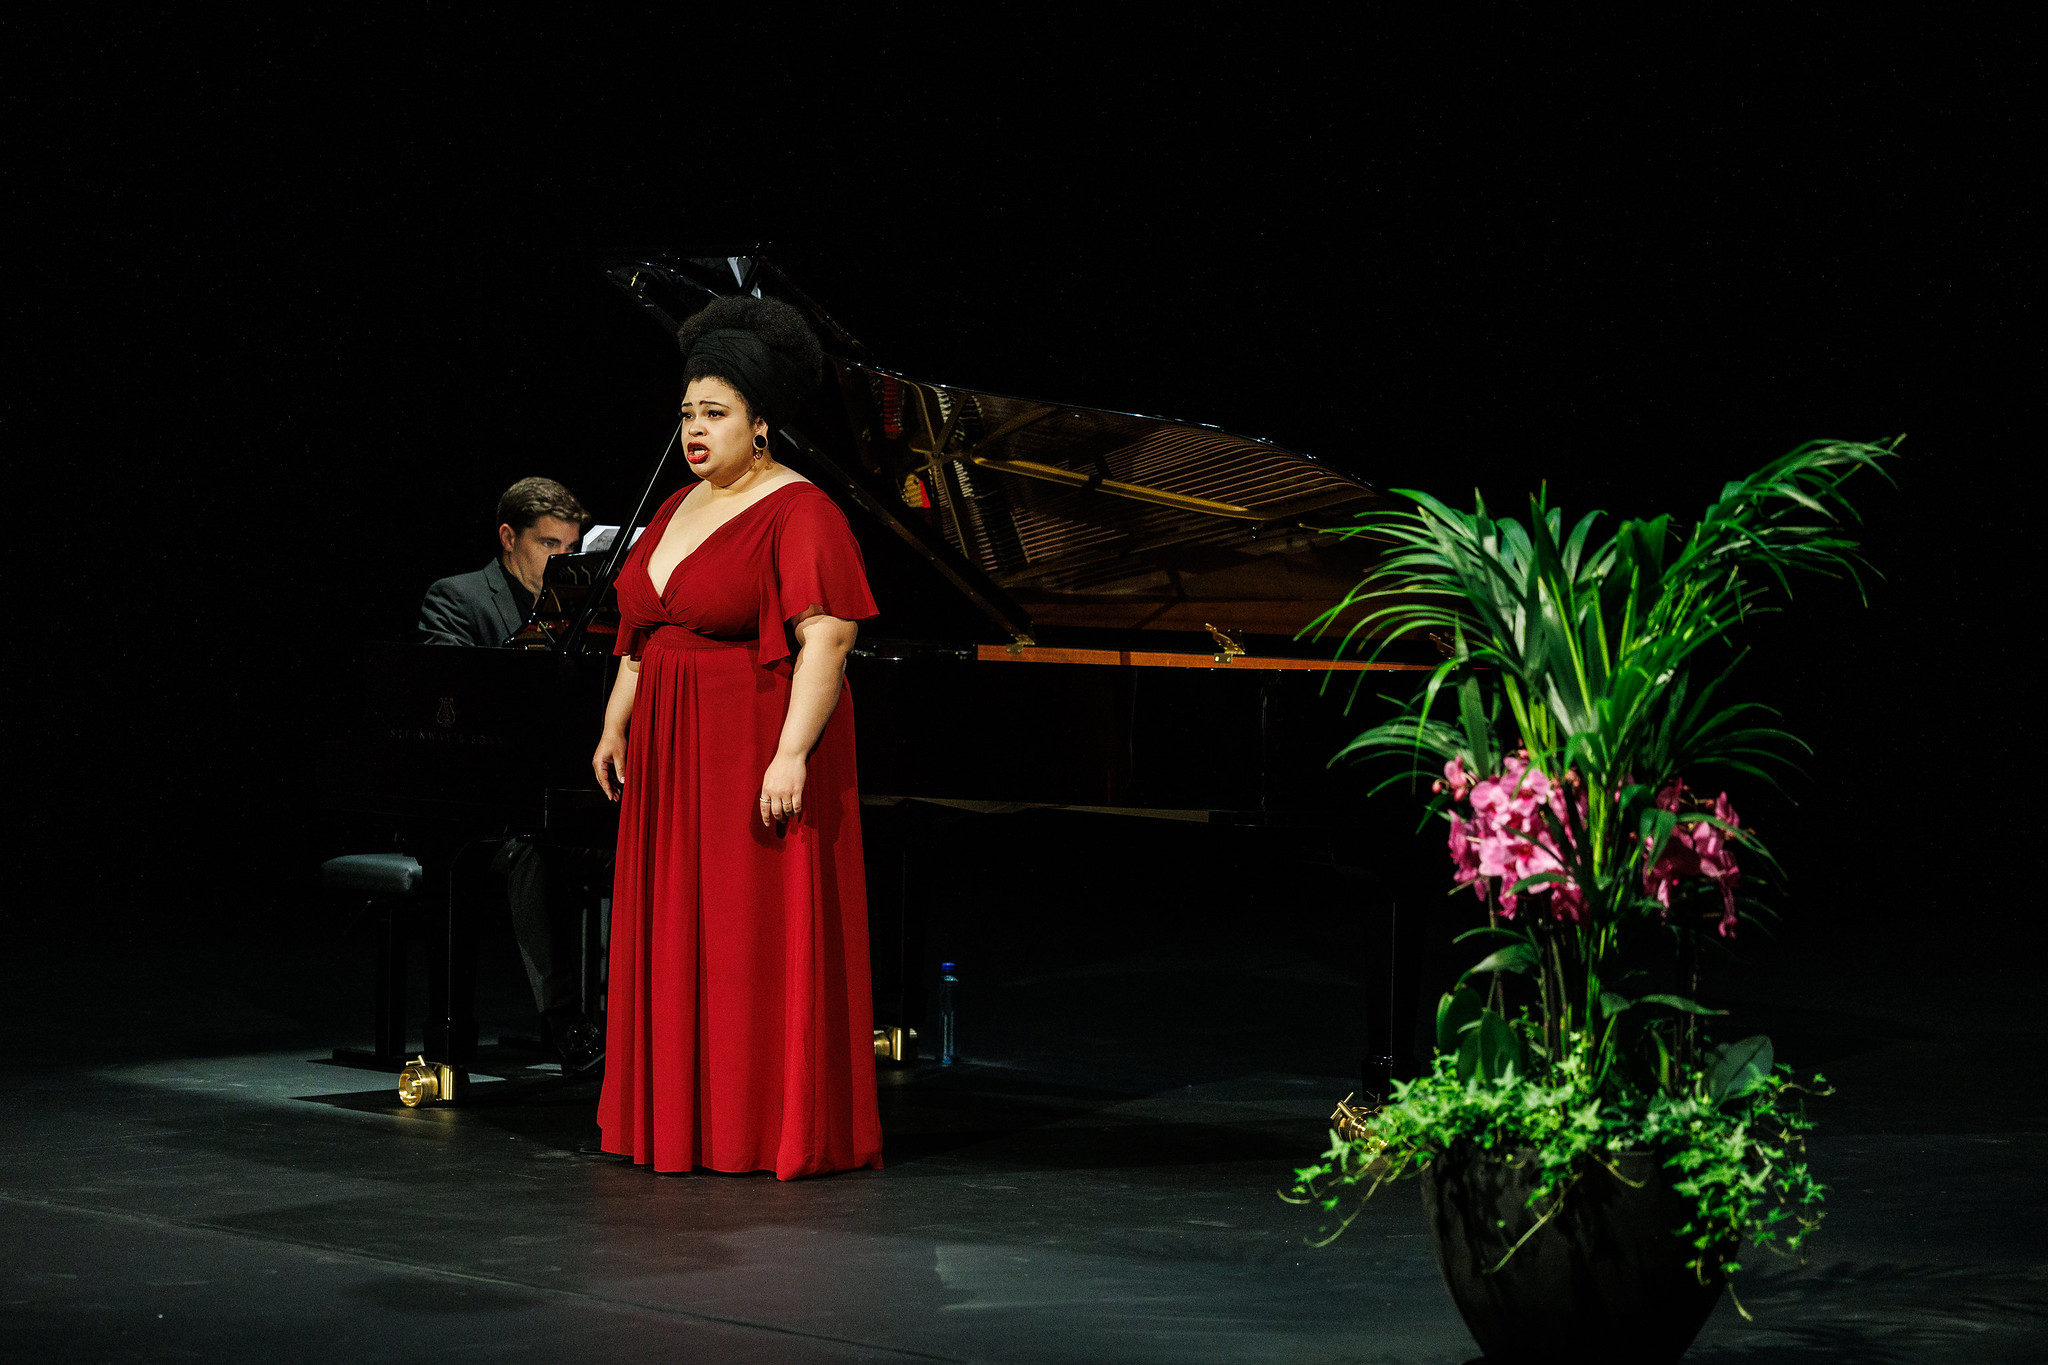 Afrikansk-amerikansk kvinne i rød kjole synger opera ved et flygel. Mann i sort dress spiller på flygelet